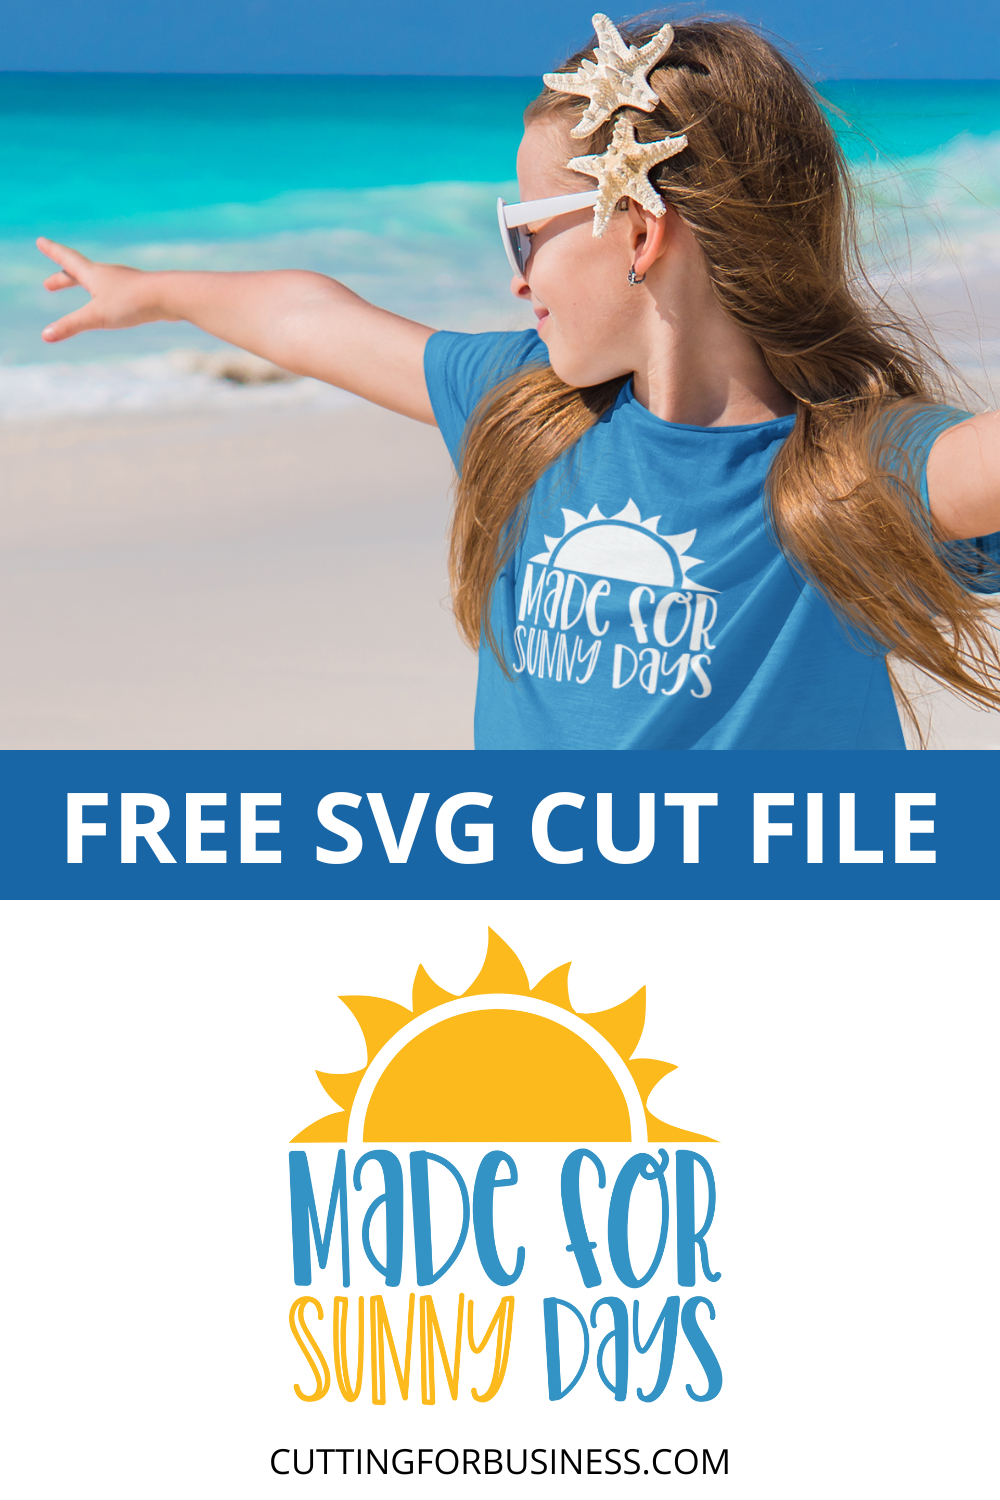 קובץ חיתוך SVG'Made for Sunny Days' עבור Silhouette, Cricut, Glowforge ועוד - cuttingforbusiness.com.